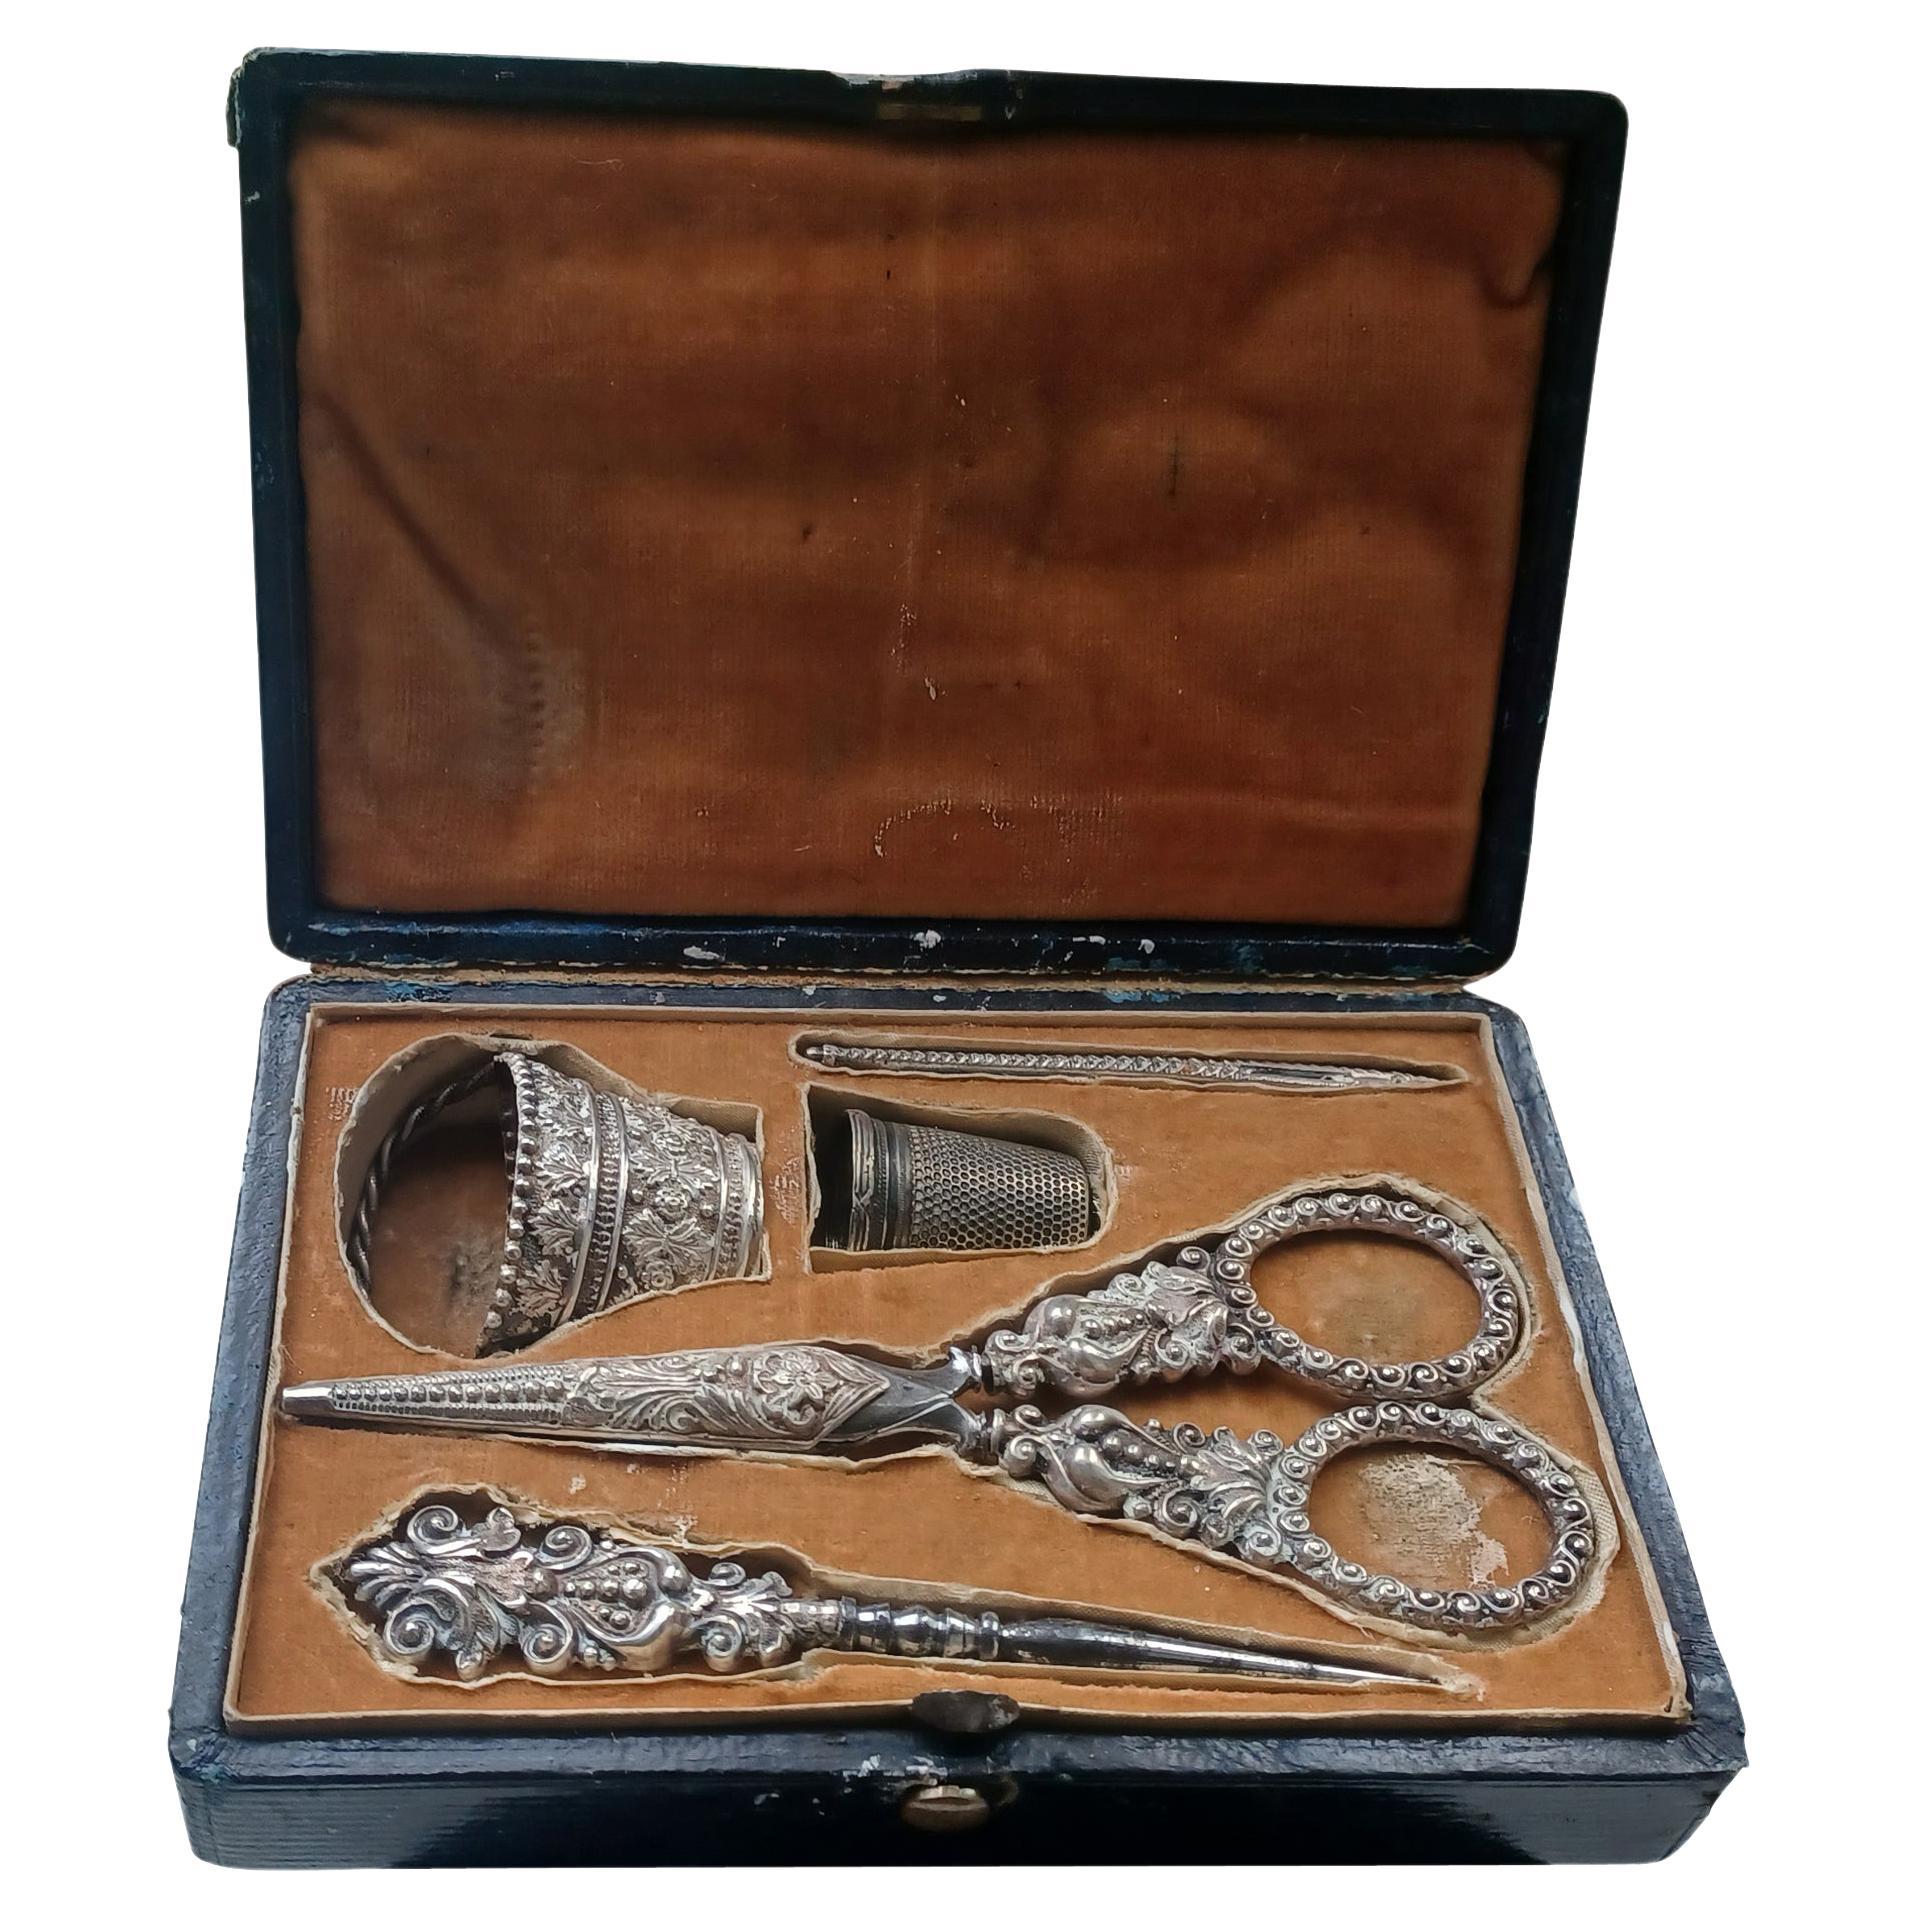 Rare Antiquité George IV Lady's Sewing Necessaire with Original Case, est. 1825